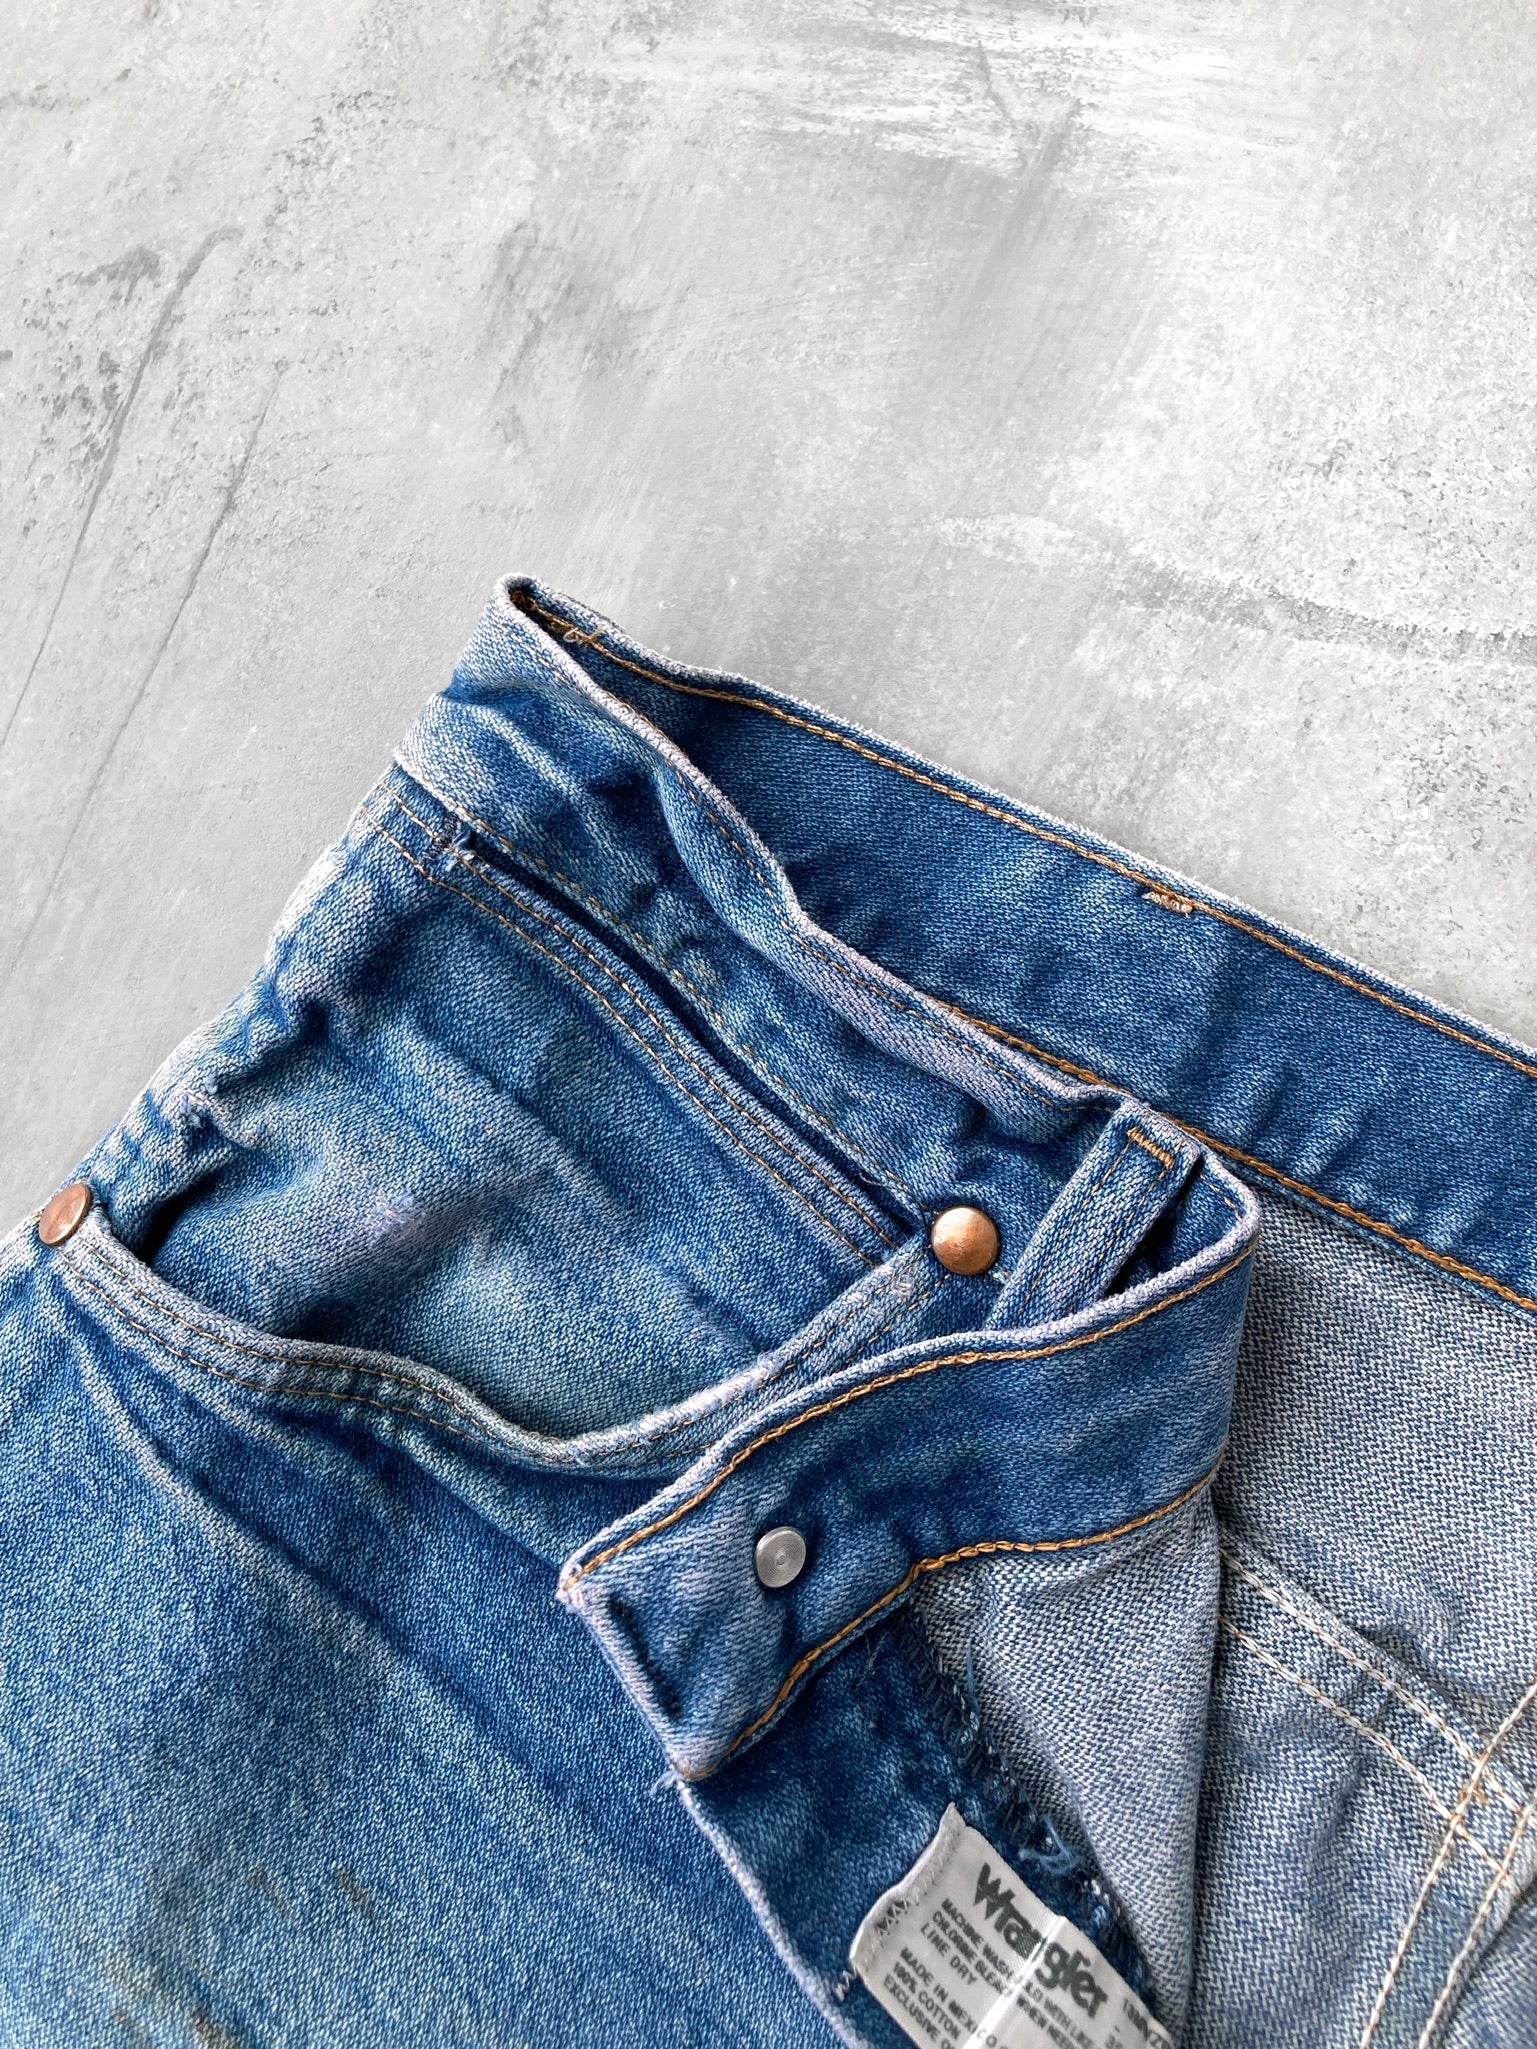 Distressed Wrangler Jeans Y2K - 34x31 – Lot 1 Vintage